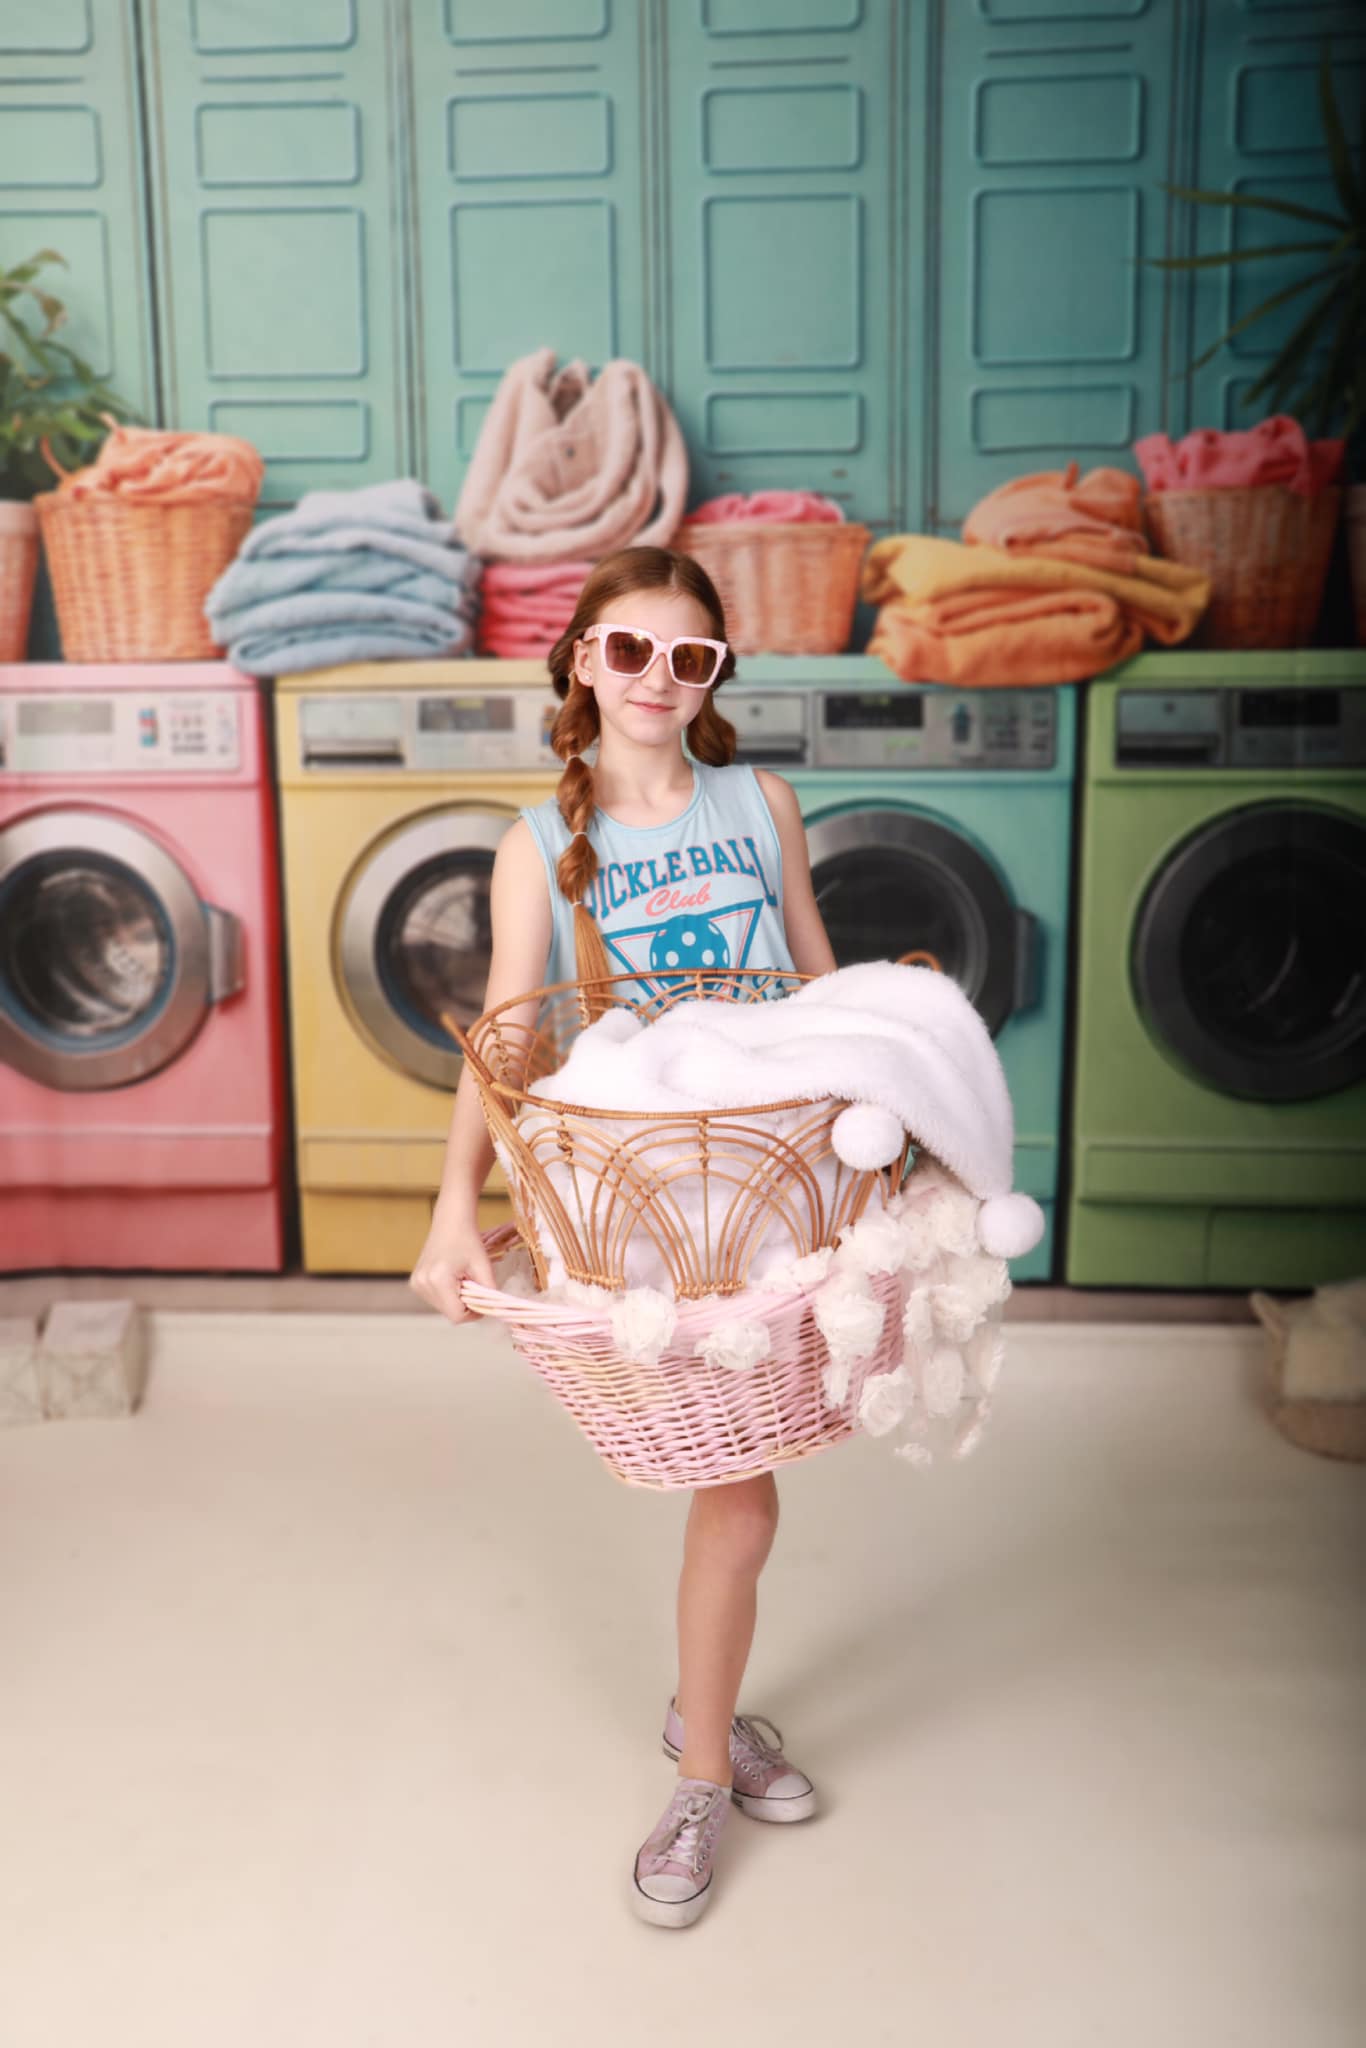 Super Sale-A Kate Laundry Day Bunte Waschmaschine Hintergrund von Chain Photography